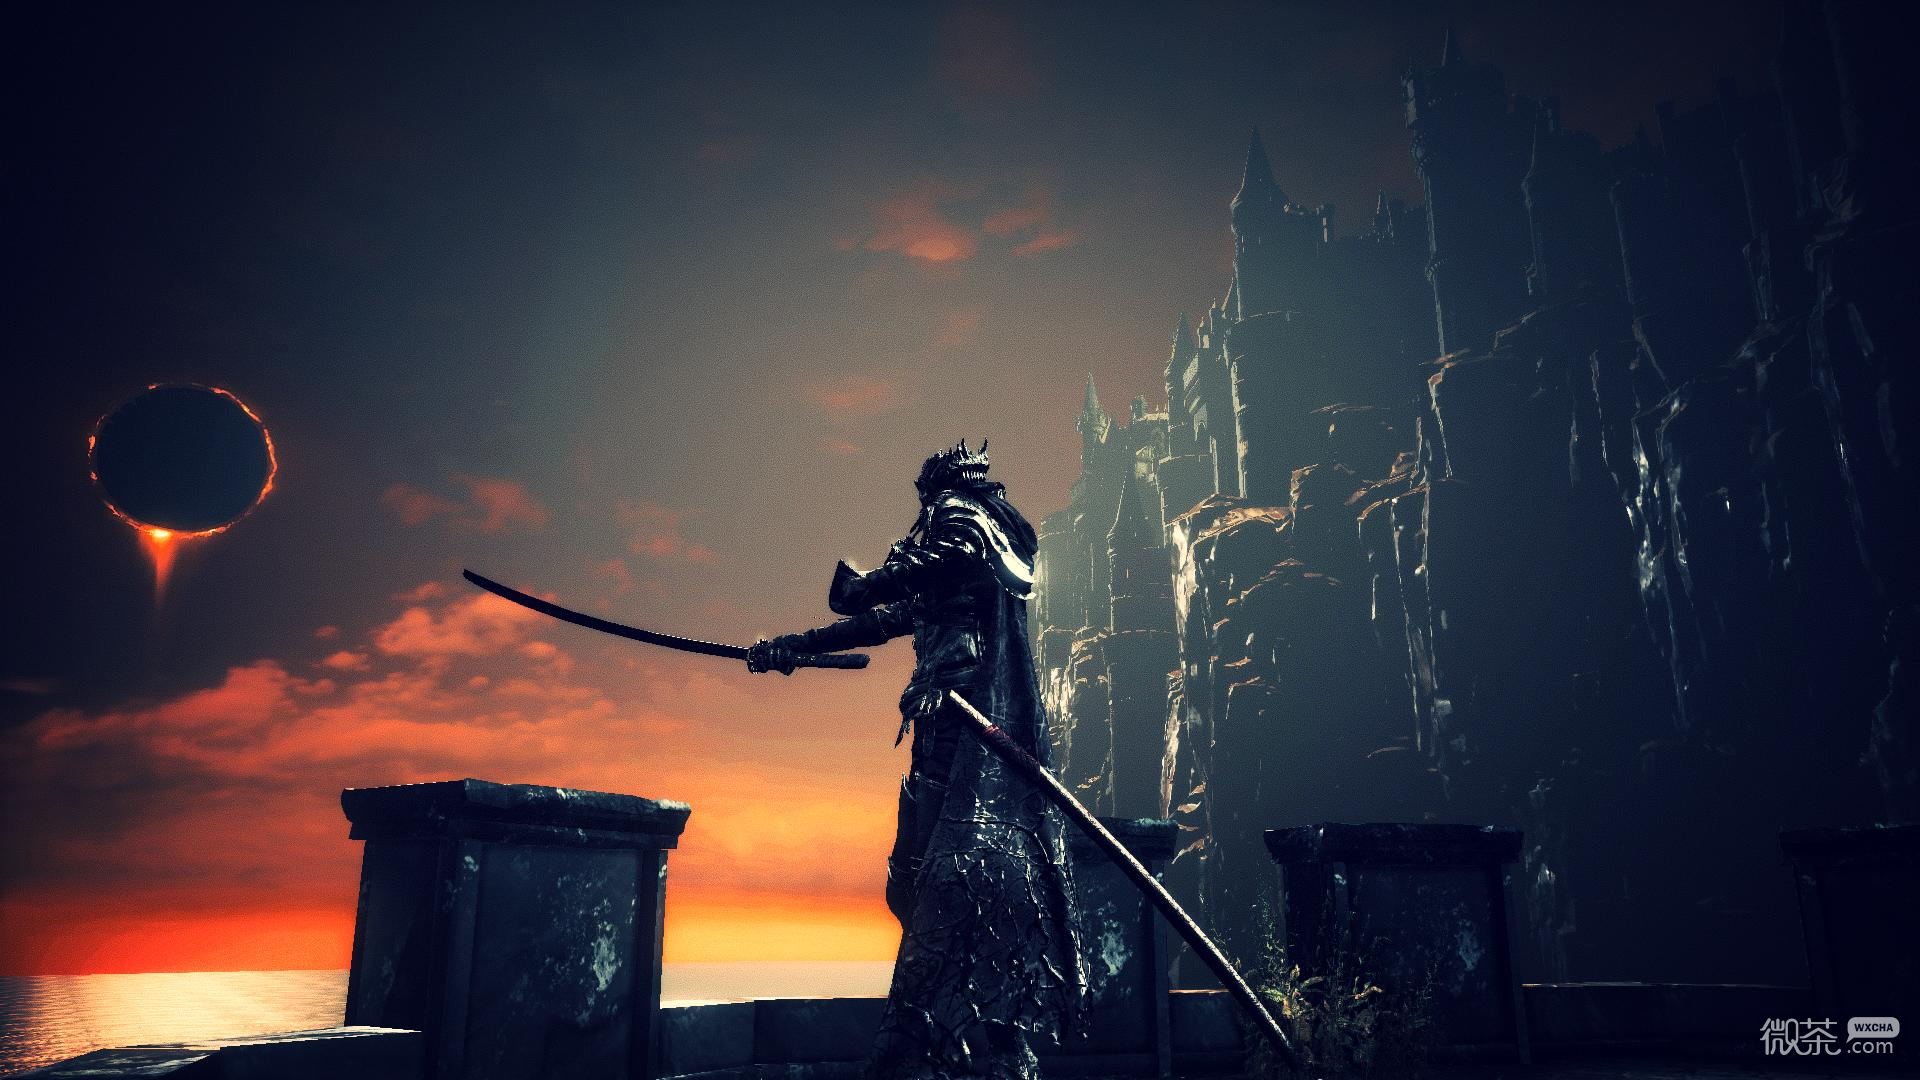 《黑暗之魂3》武器“洛里克斯骑士剑”获取攻略